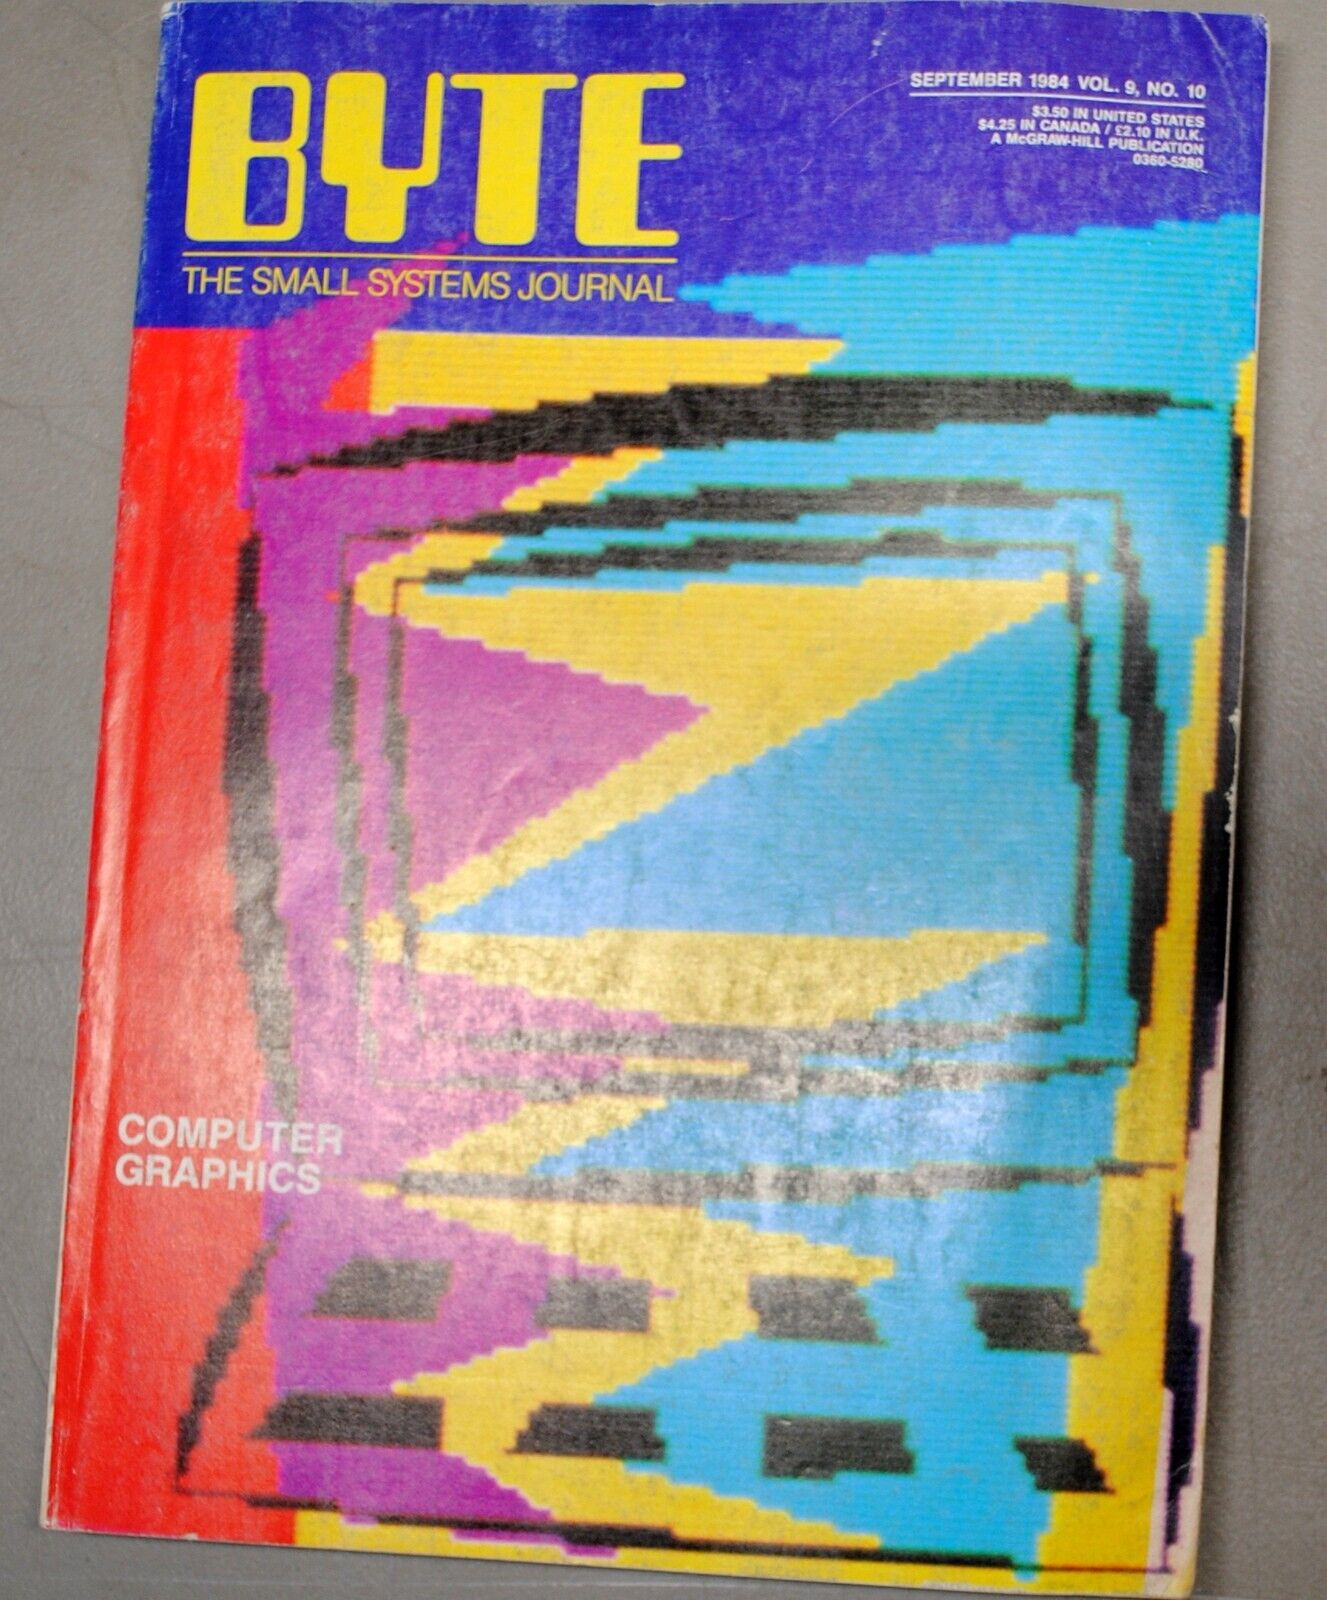 Historic Issue of BYTE  Magazine  September 1984